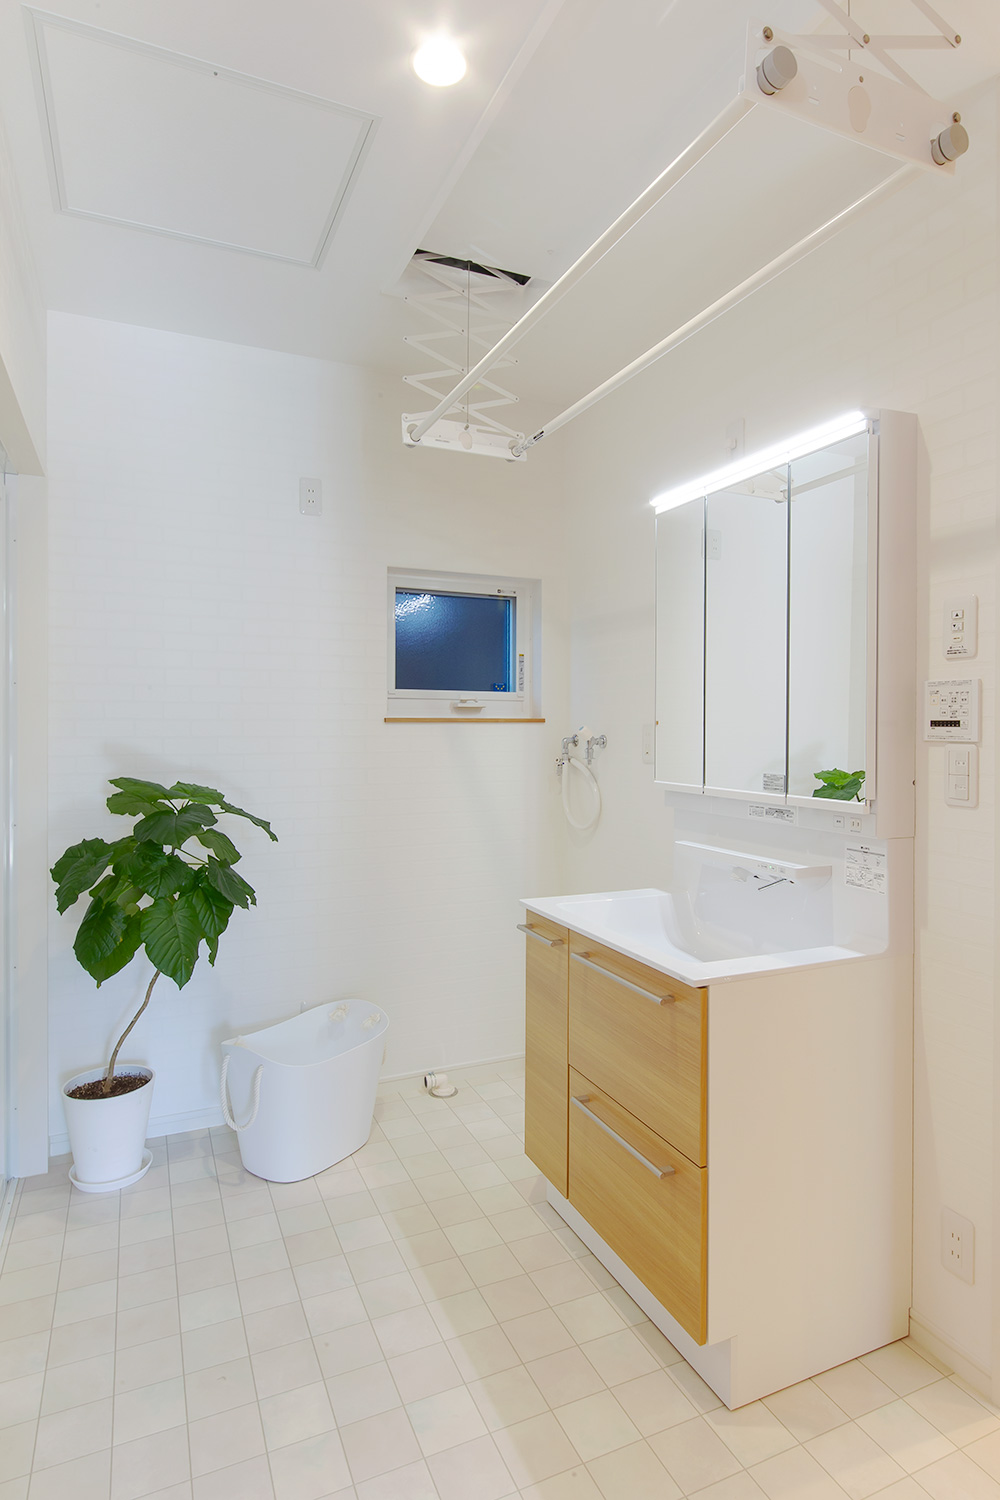 洗面所 - やさしい木の家 施工事例 - 山田建築店